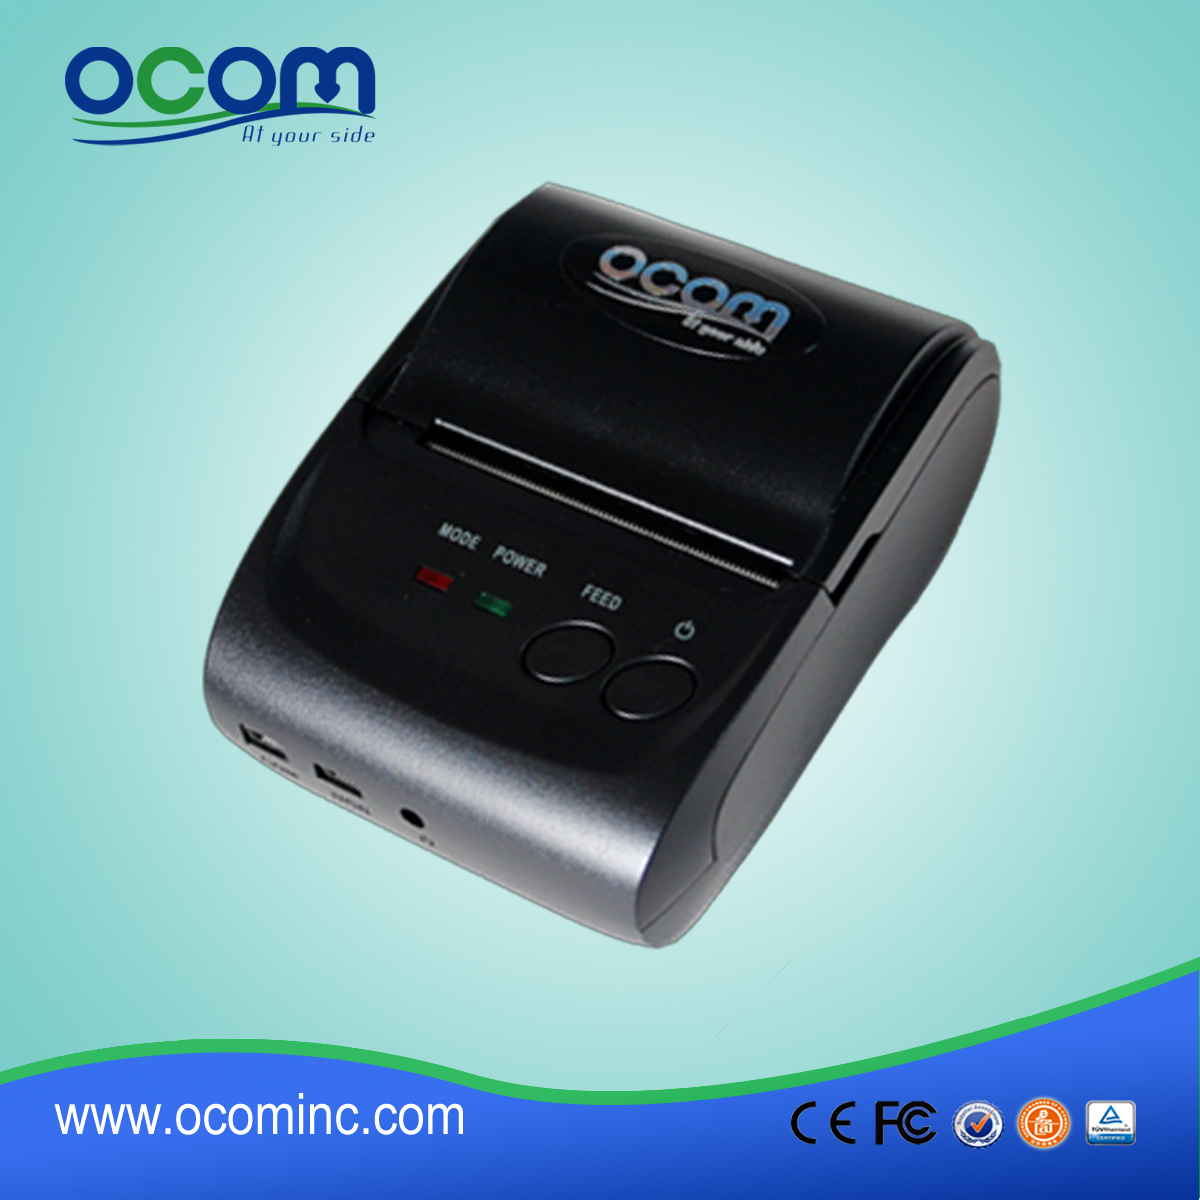 OCPP-M05: 2.015 mini stampante termica, stampante termica Android di alta qualità